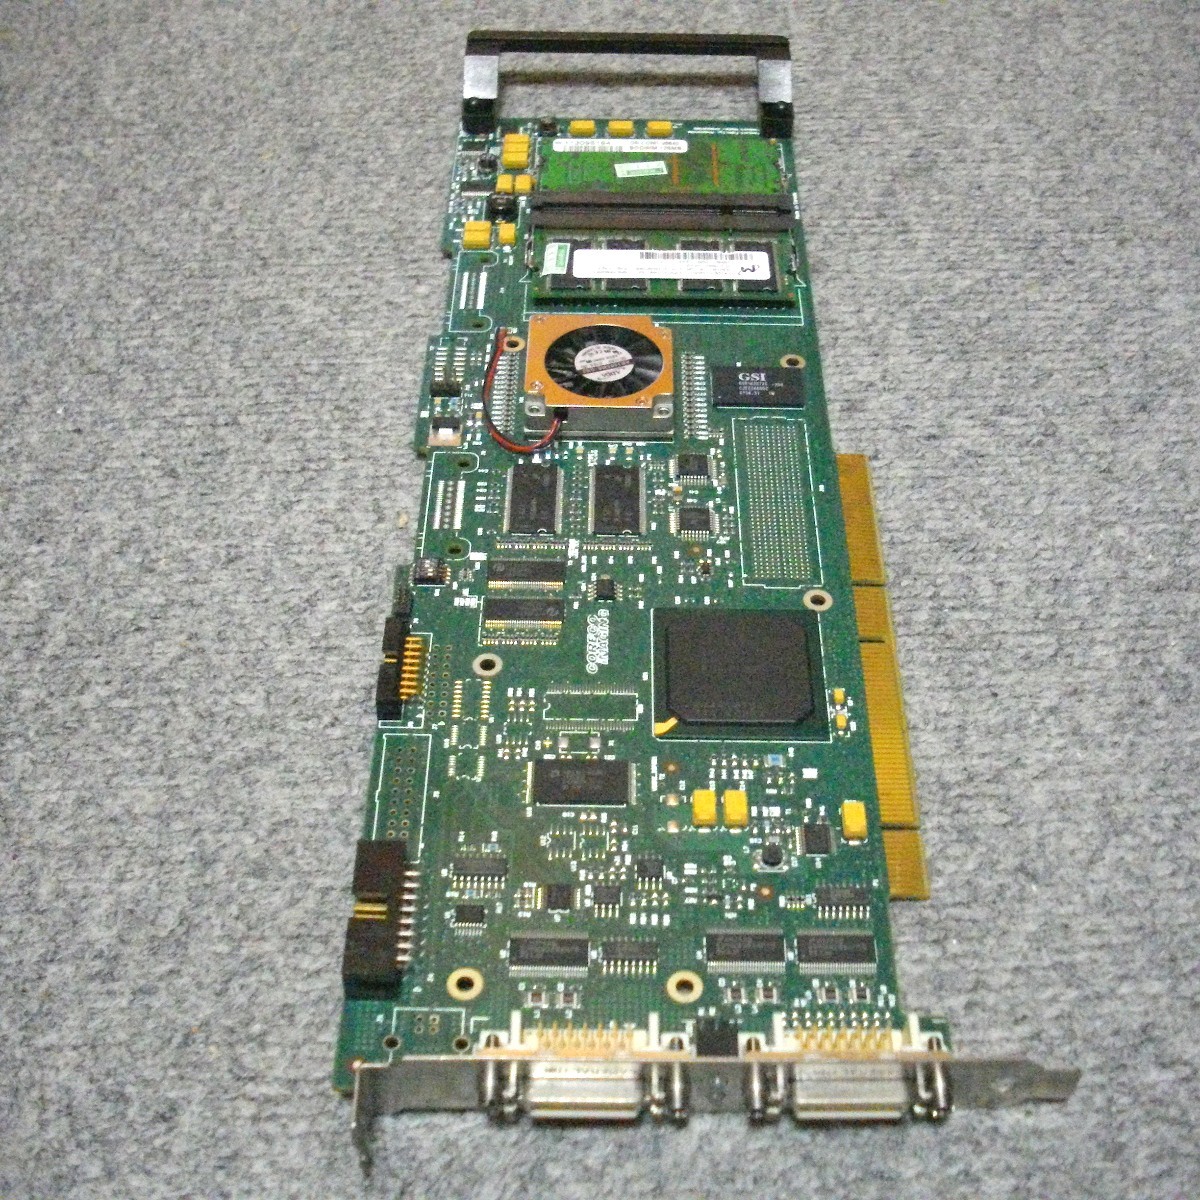 JUNK即納 デバイス認識まで確認 産業用PCI-Xボード CORECO IMAGING OC-MEDO-HOL00 CMI#243-2 1.10 BUILD 246 PCI-X 超格安一点